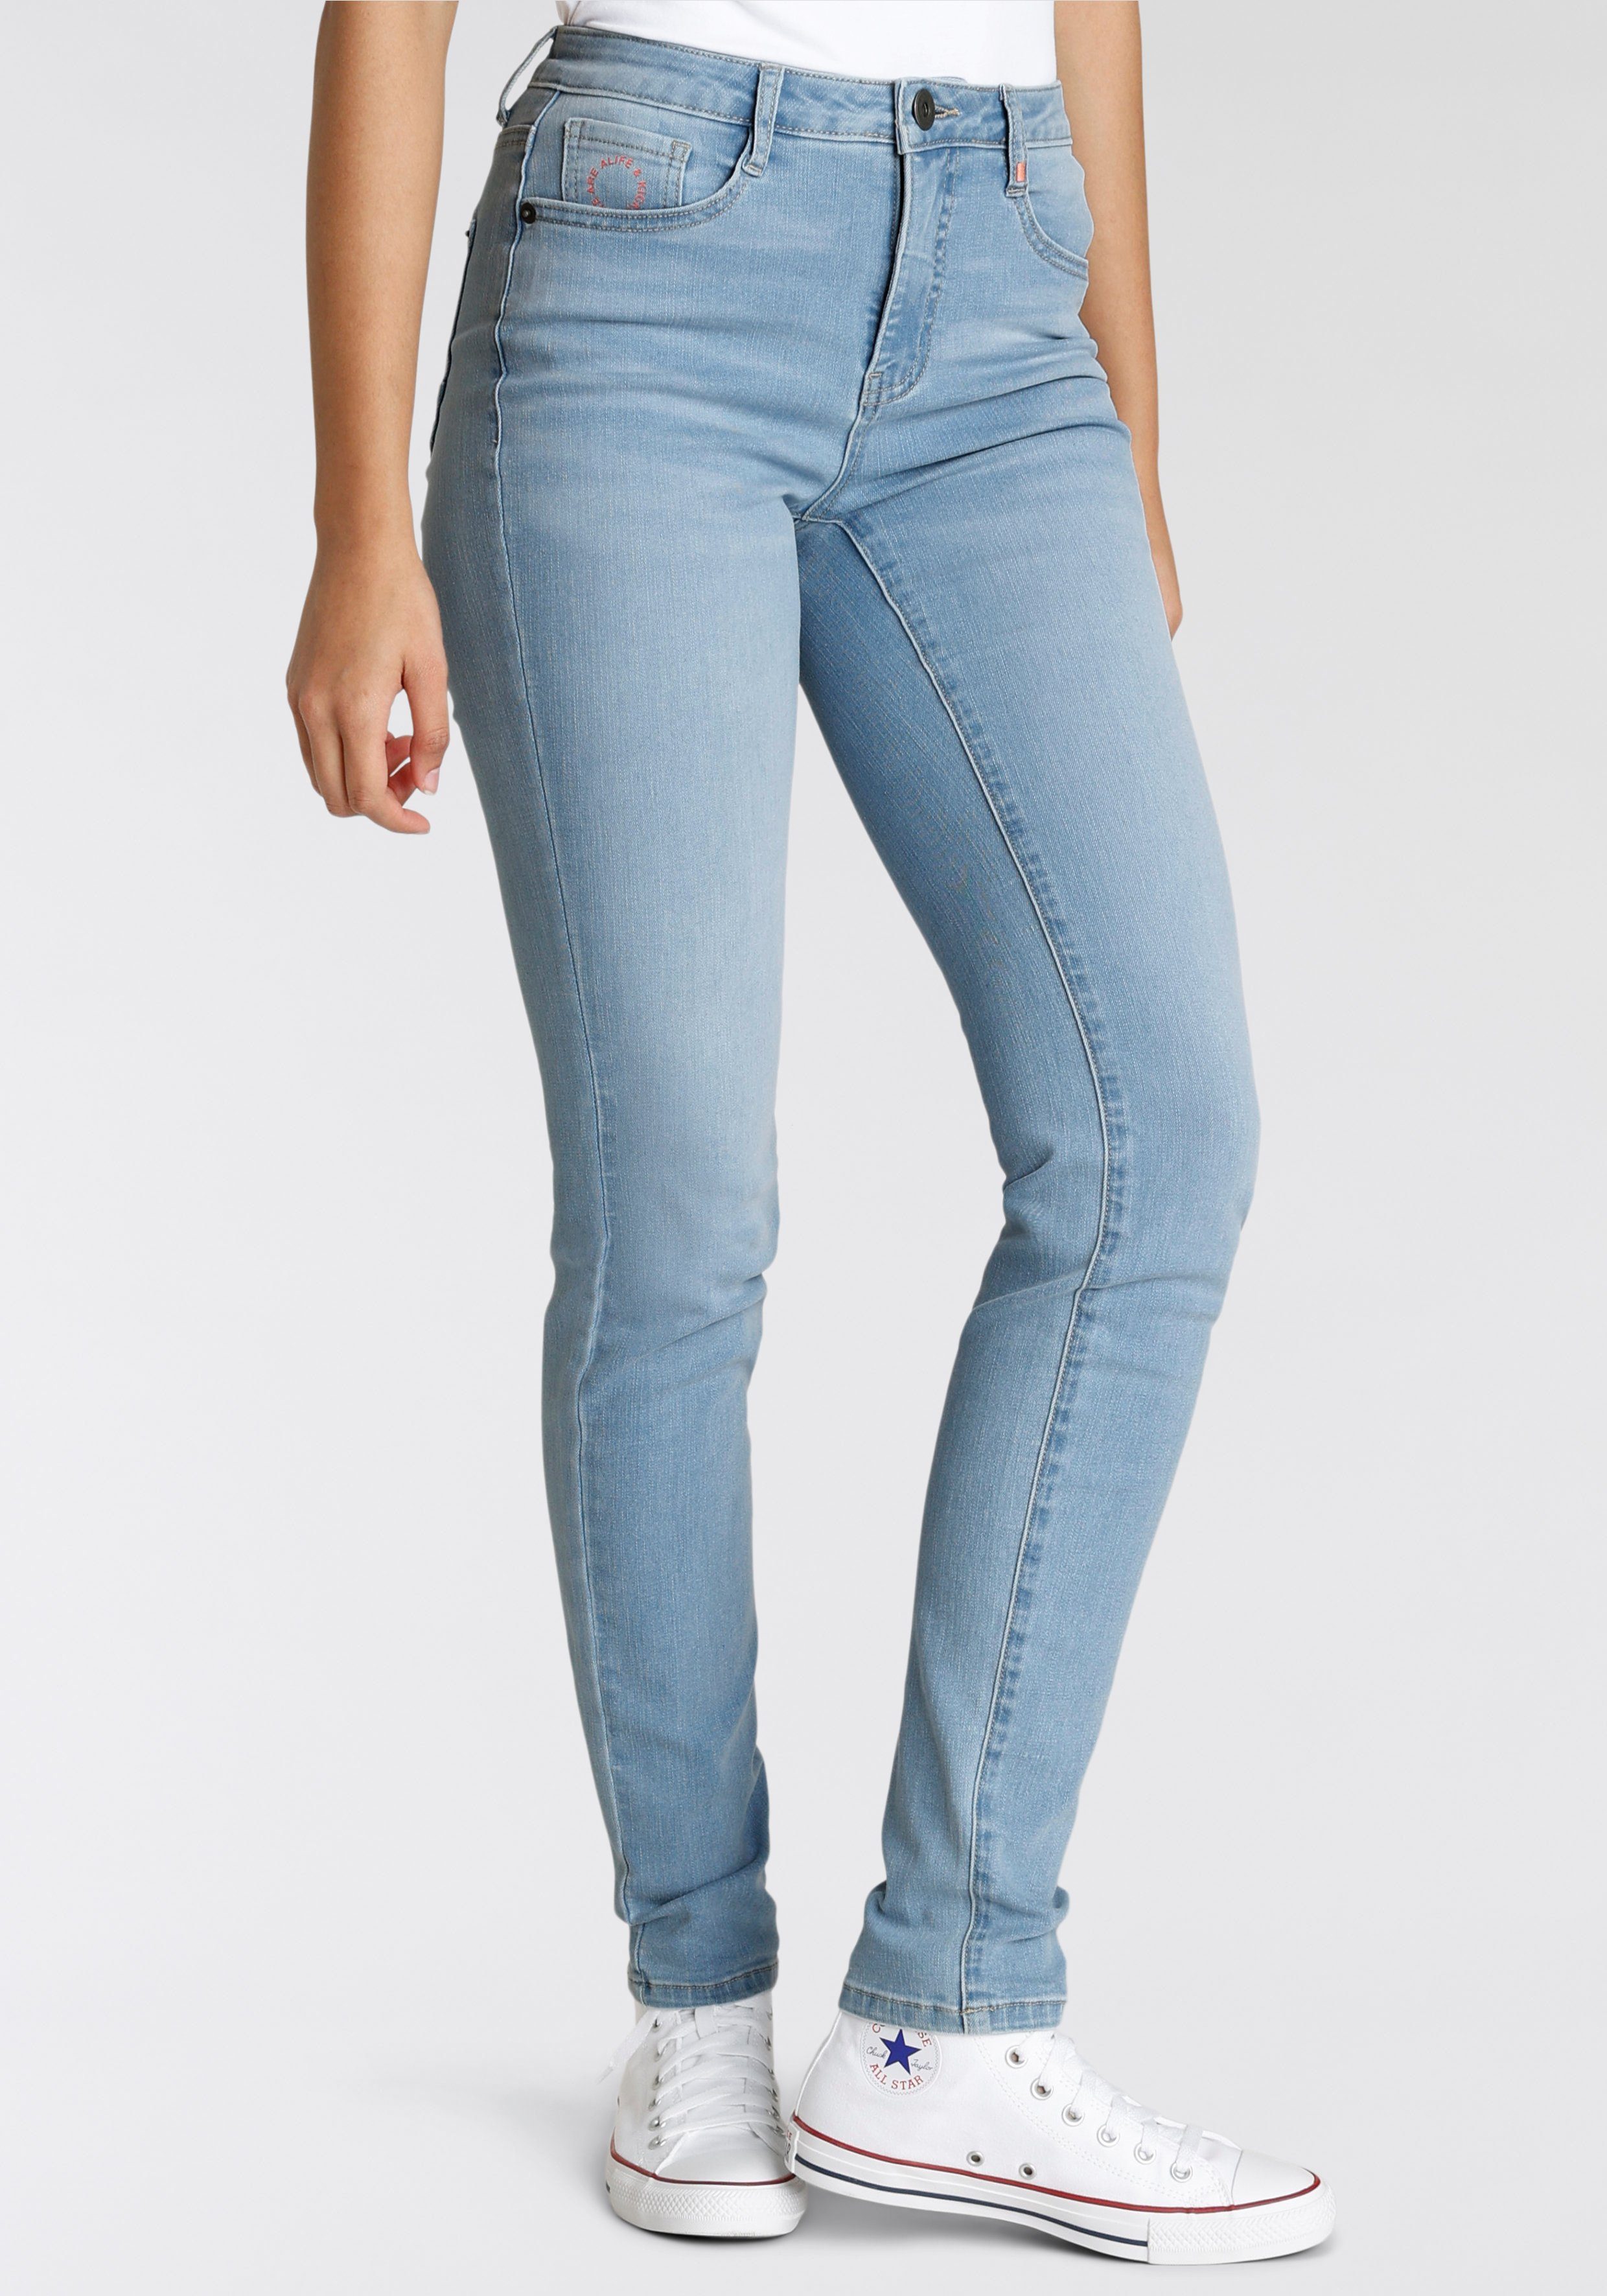 & used High-waist-Jeans light Alife Slim-Fit NolaAK Kickin KOLLEKTION NEUE blue